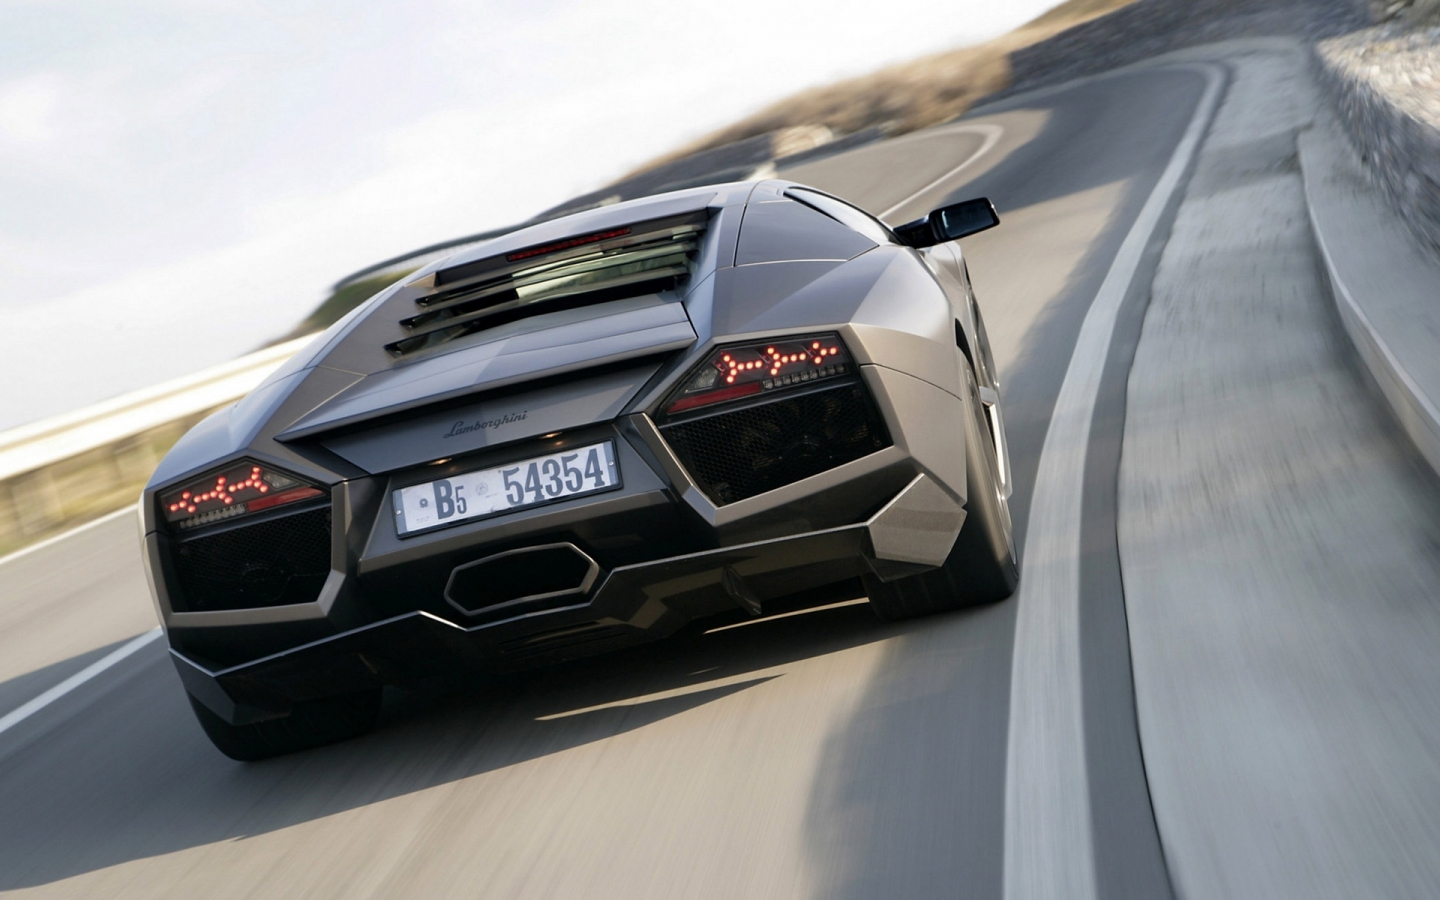 Lamborghini Reventon Back for 1440 x 900 widescreen resolution